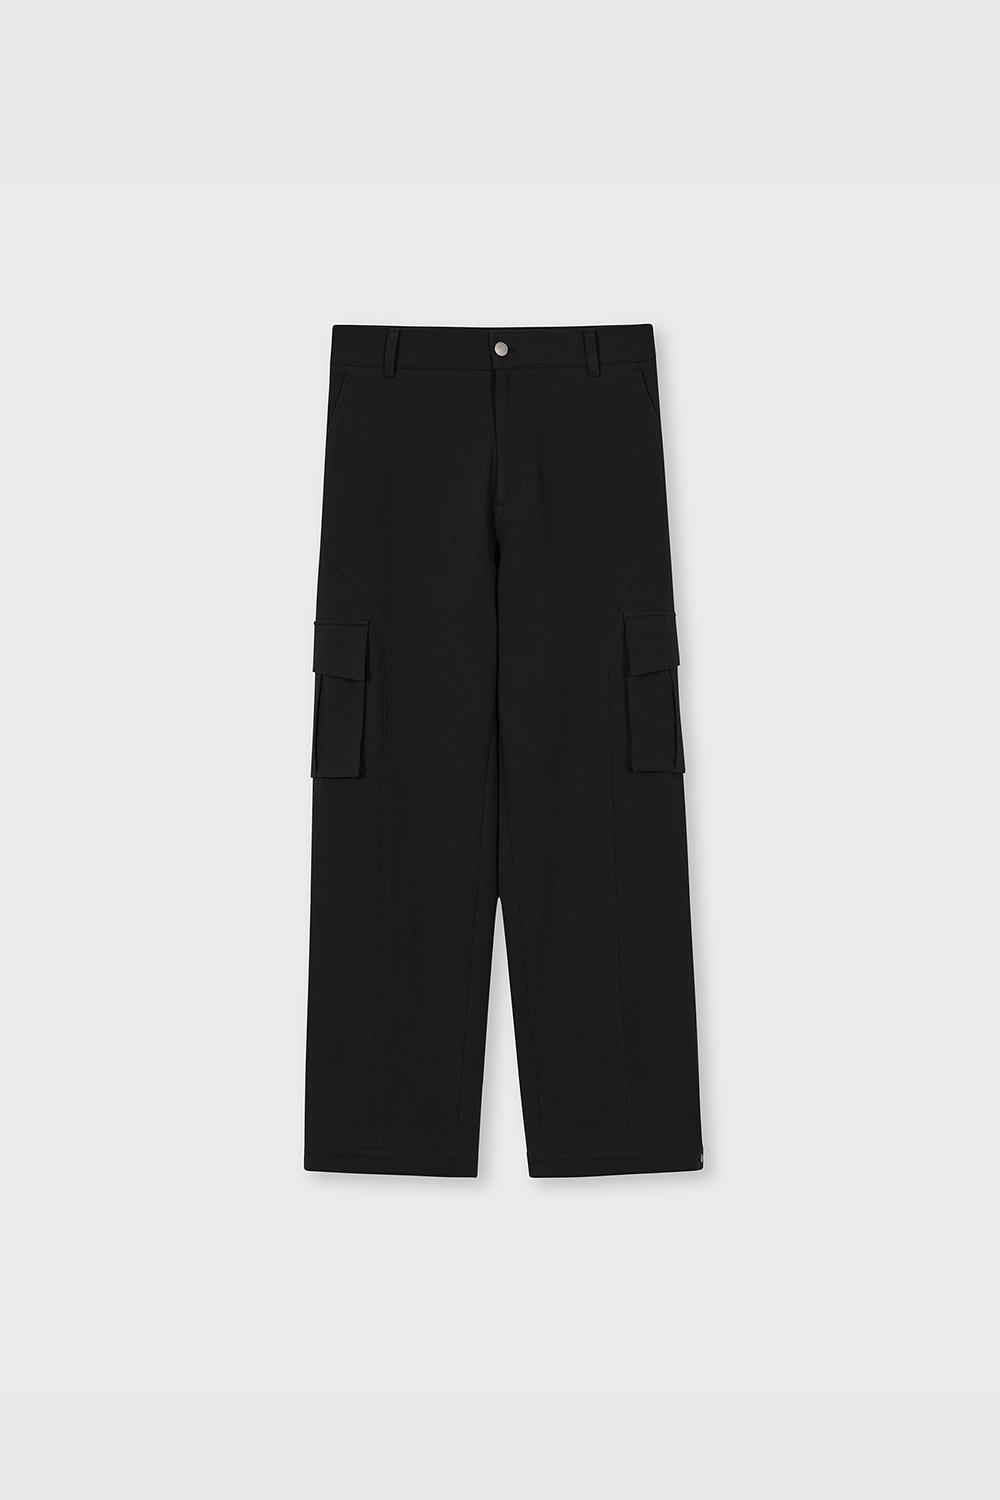 [4/6 배송] Parabola Line Cargo Pants (Extra Black)